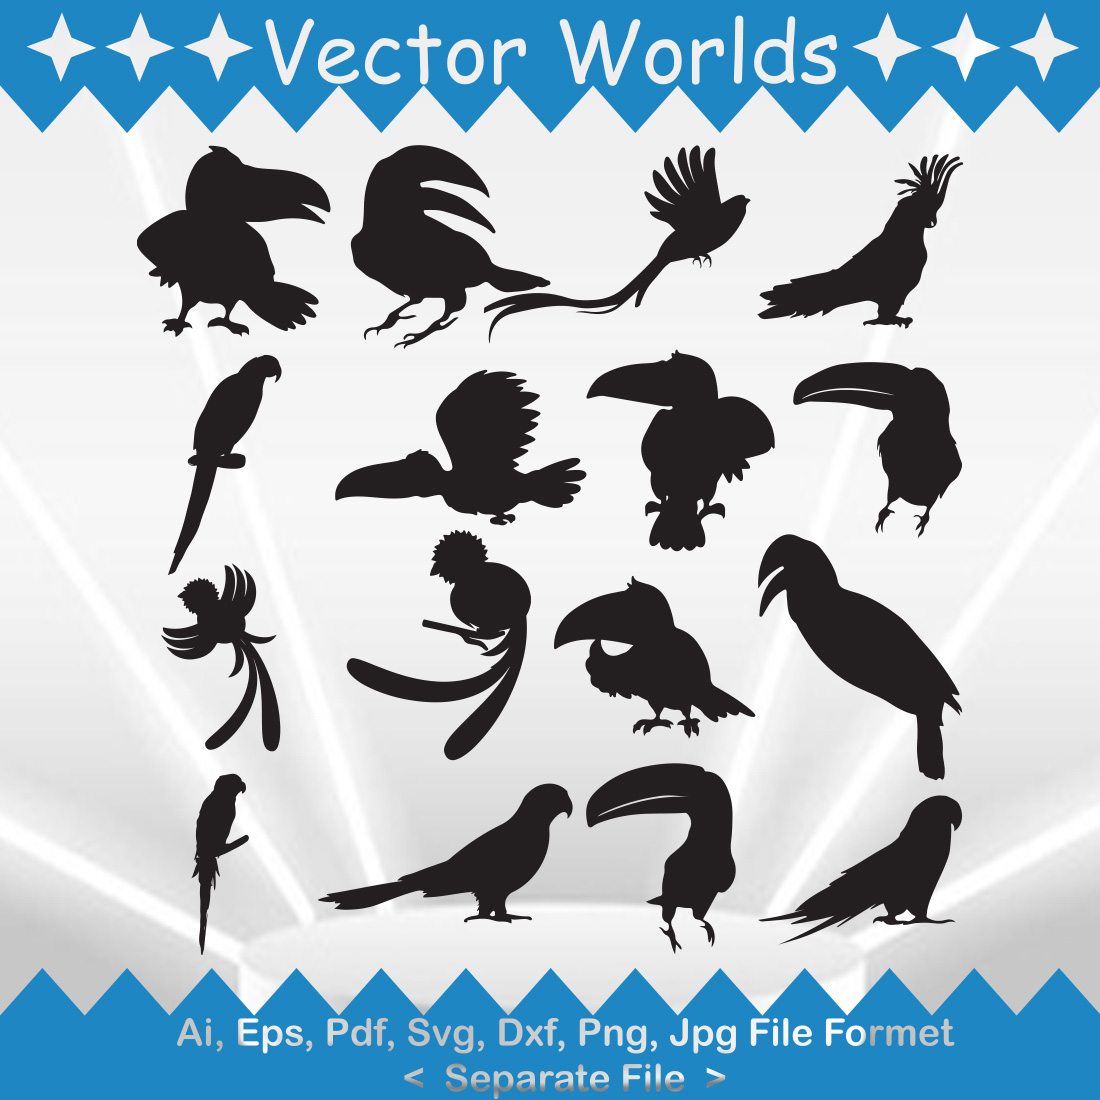 Quetzal Bird SVG Vector Design cover image.